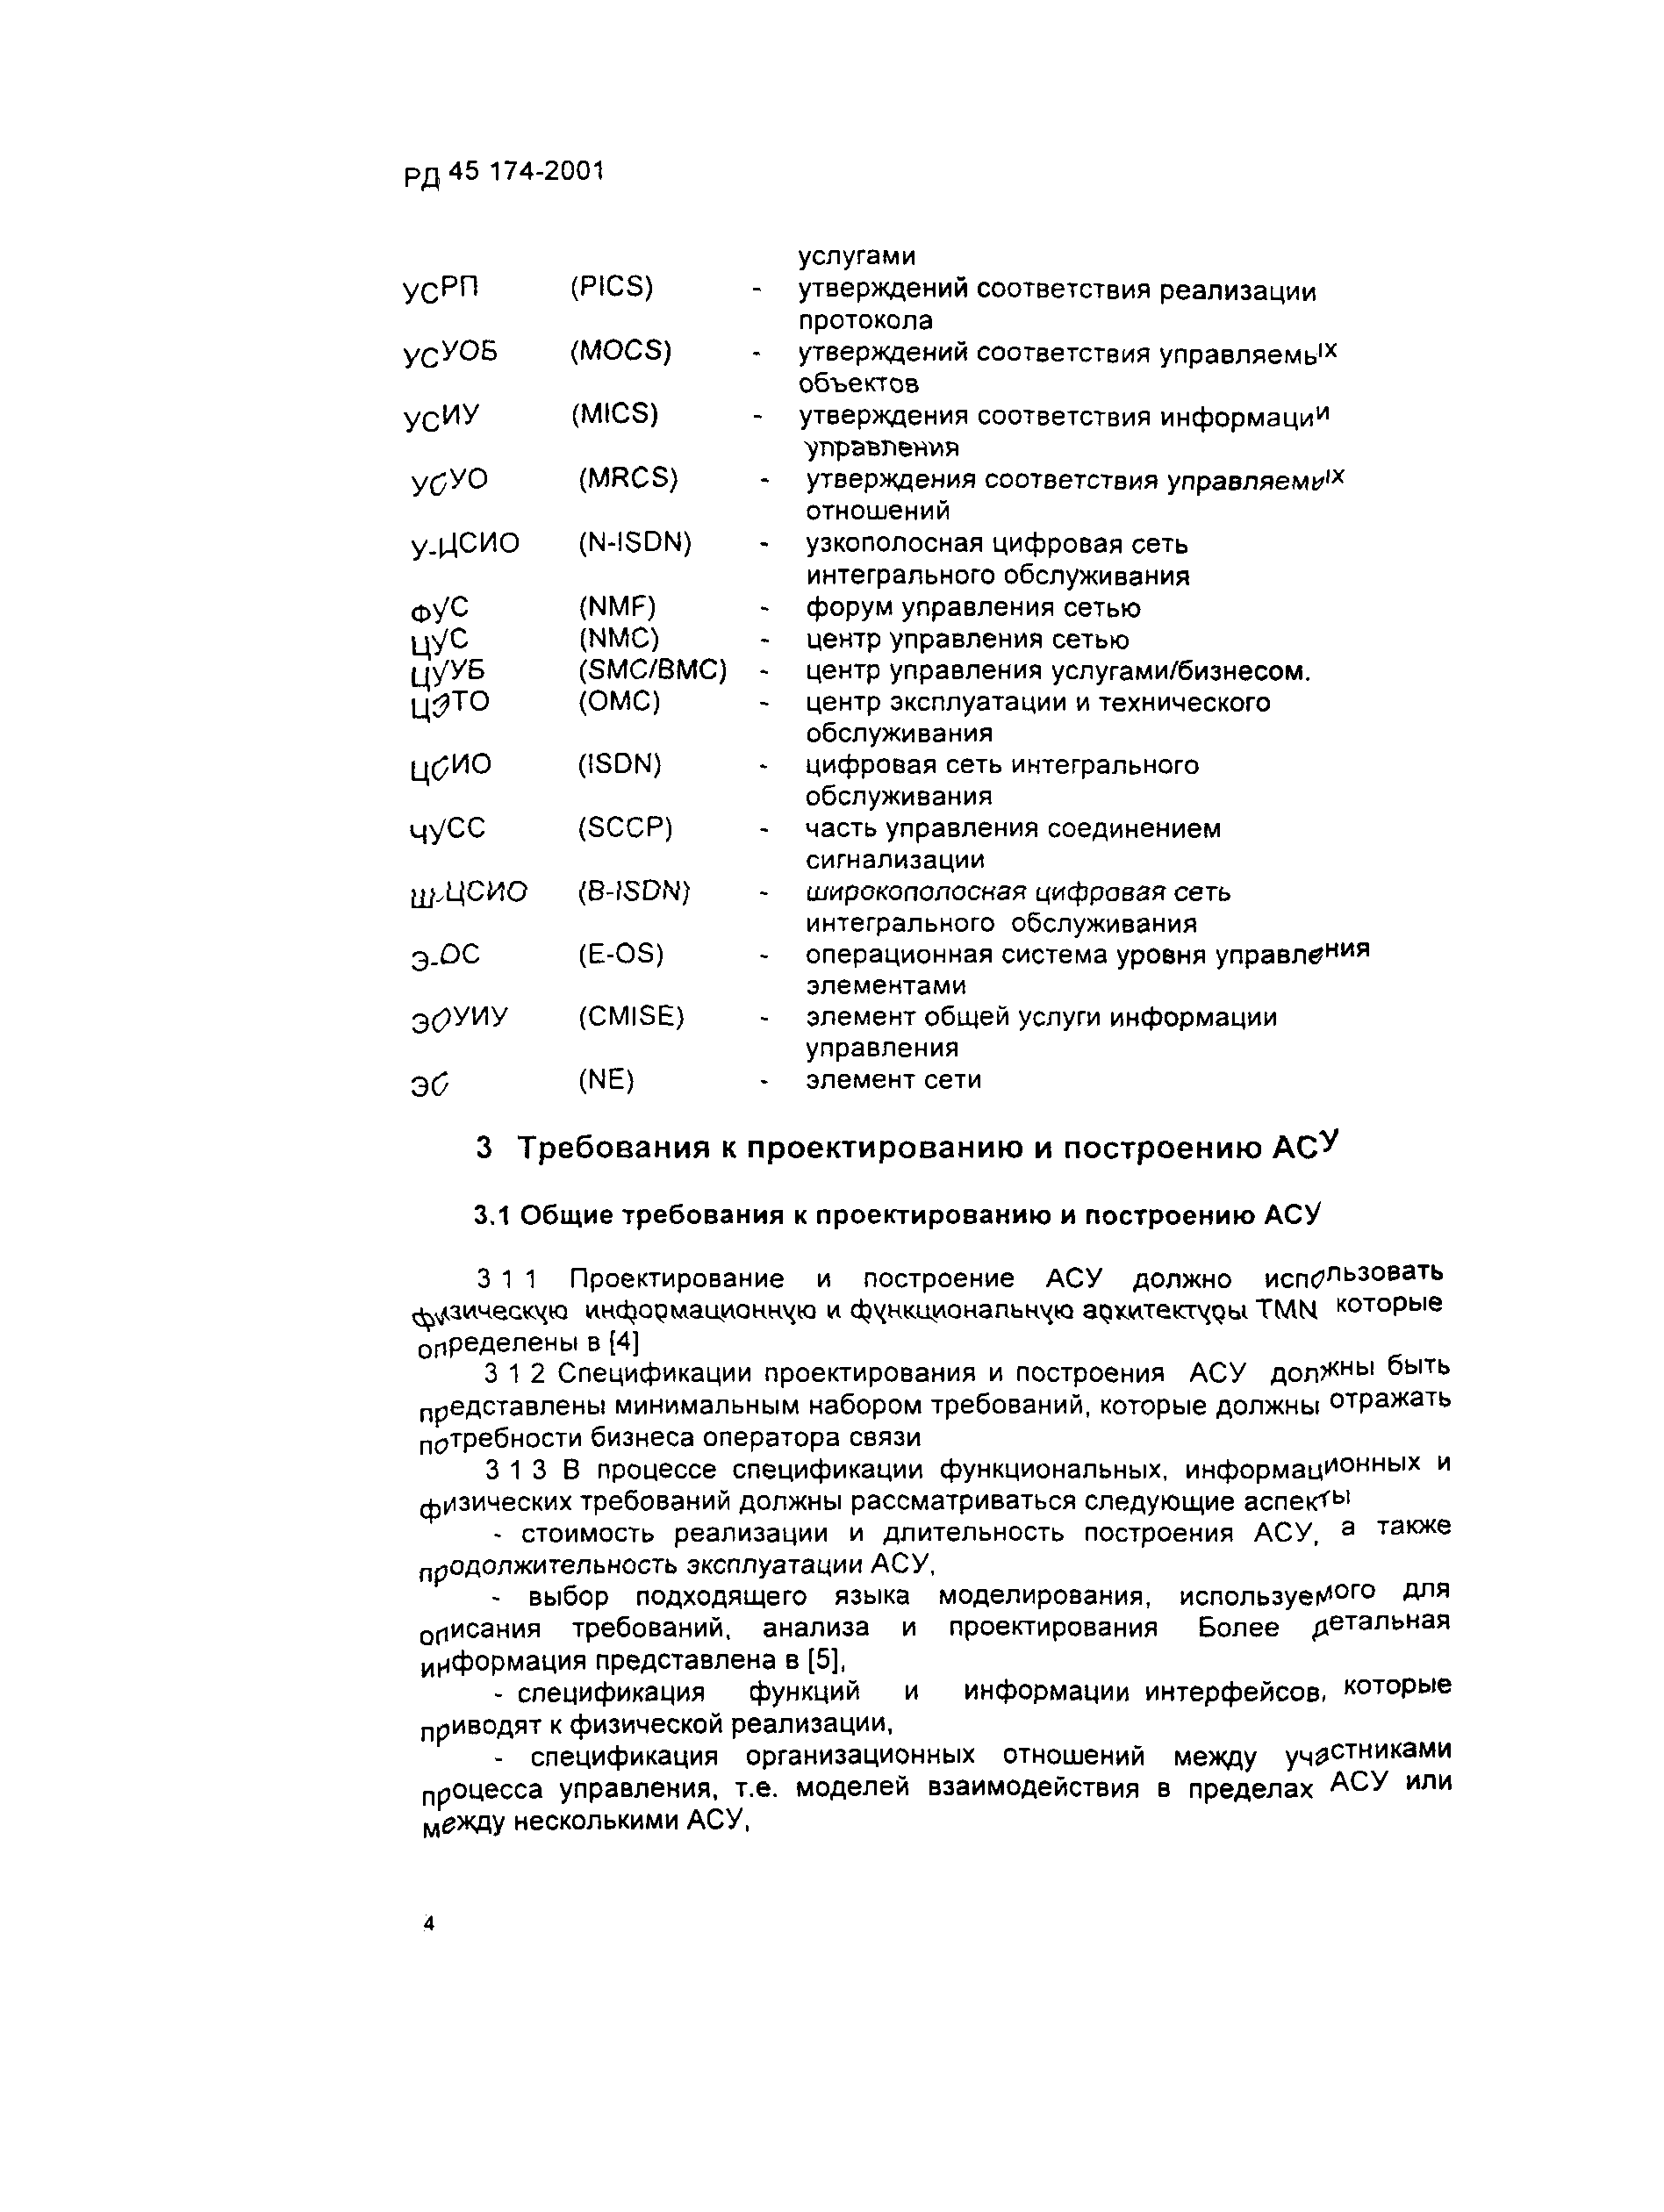 РД 45.174-2001